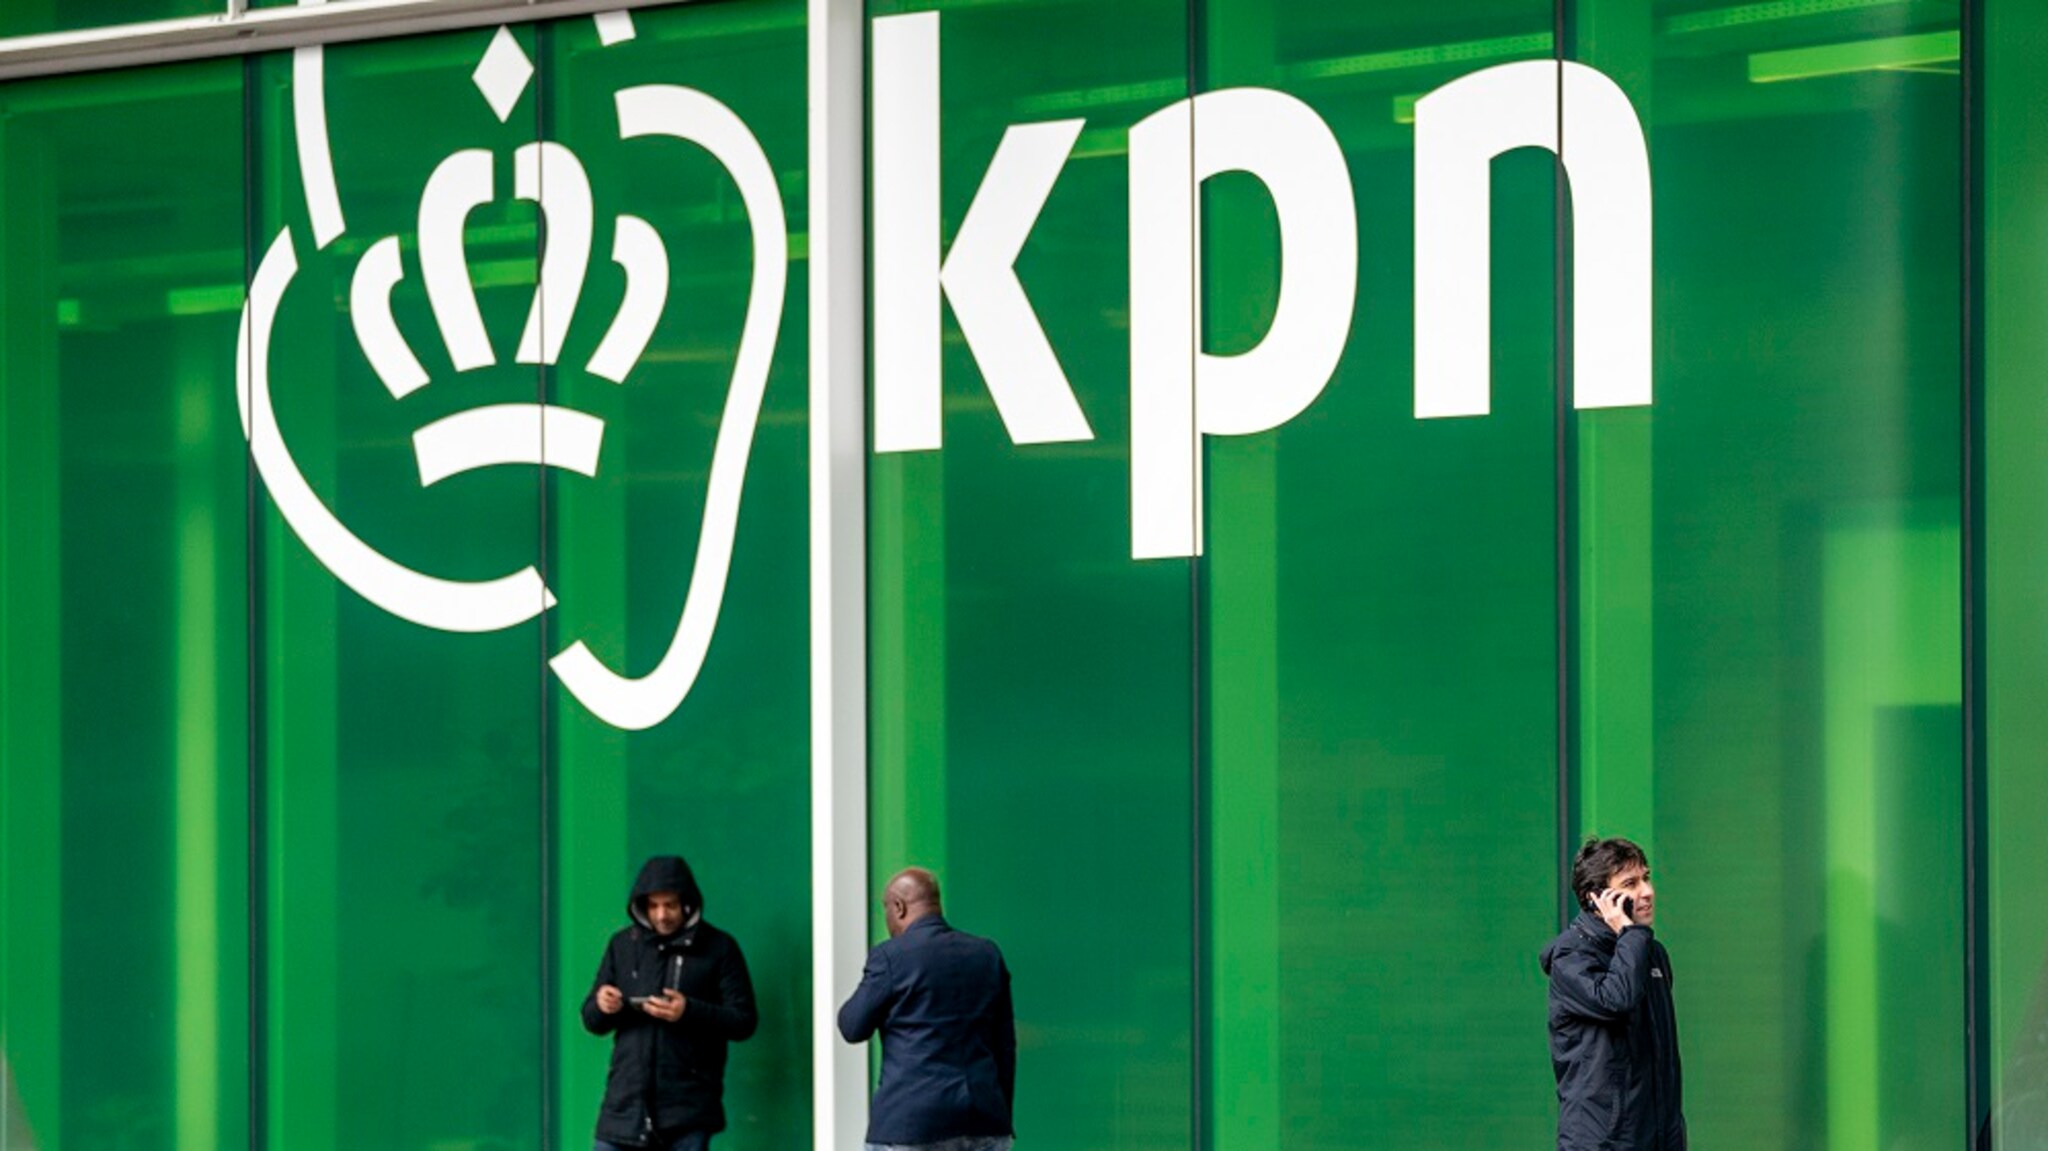 KPN Mobile Network named “Best in the World”